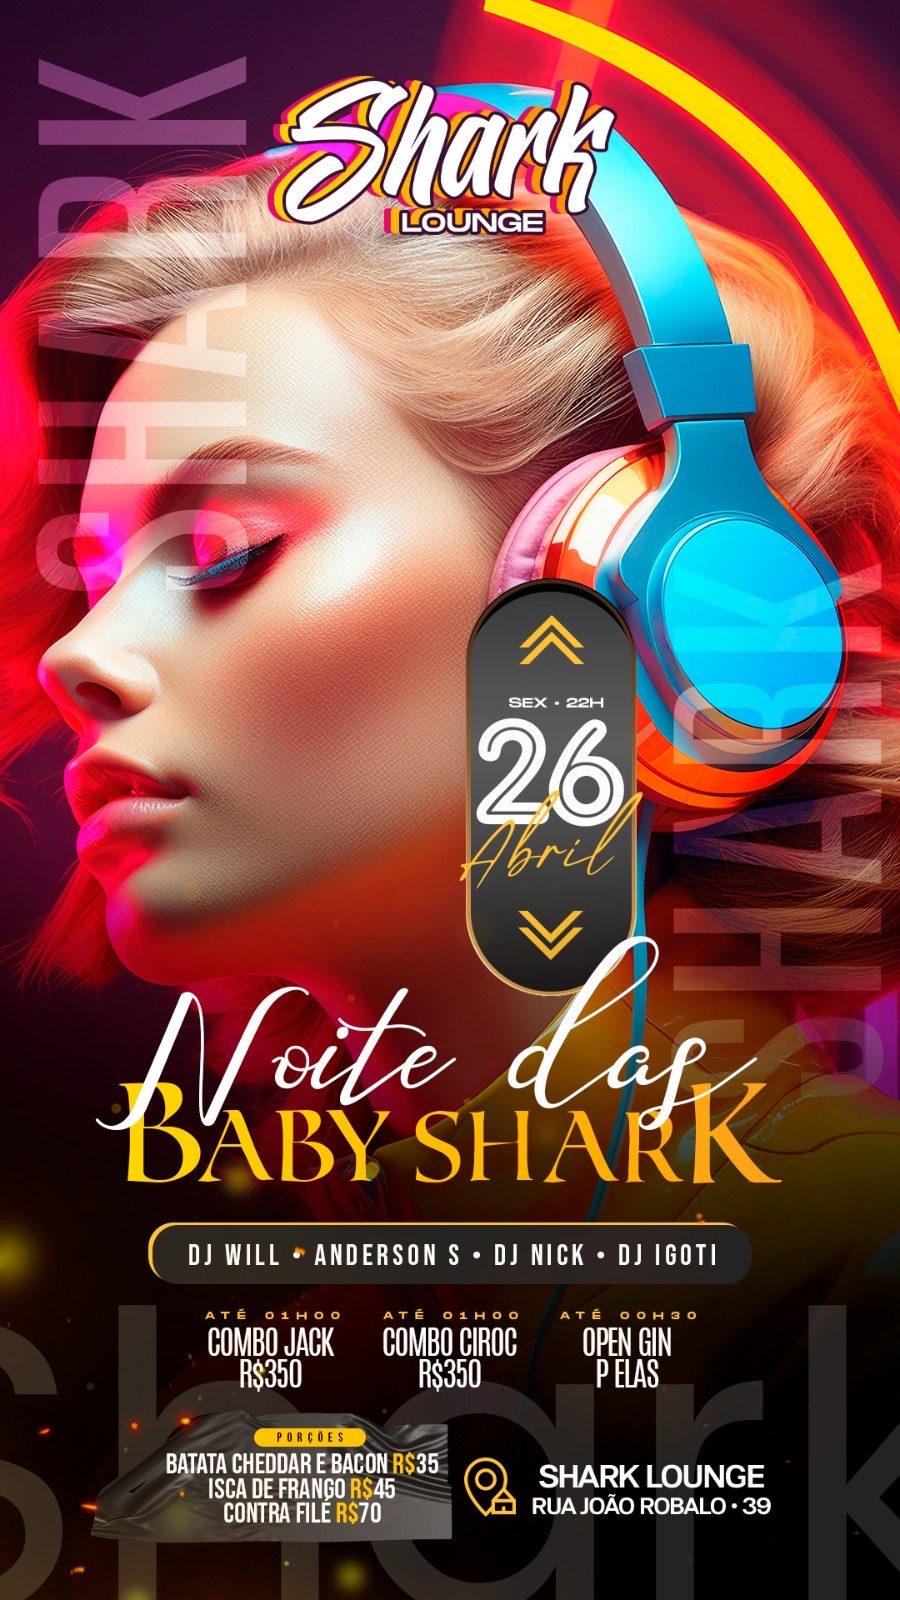 Shark Lounge & Pub: Sexta Noite das Baby Shark